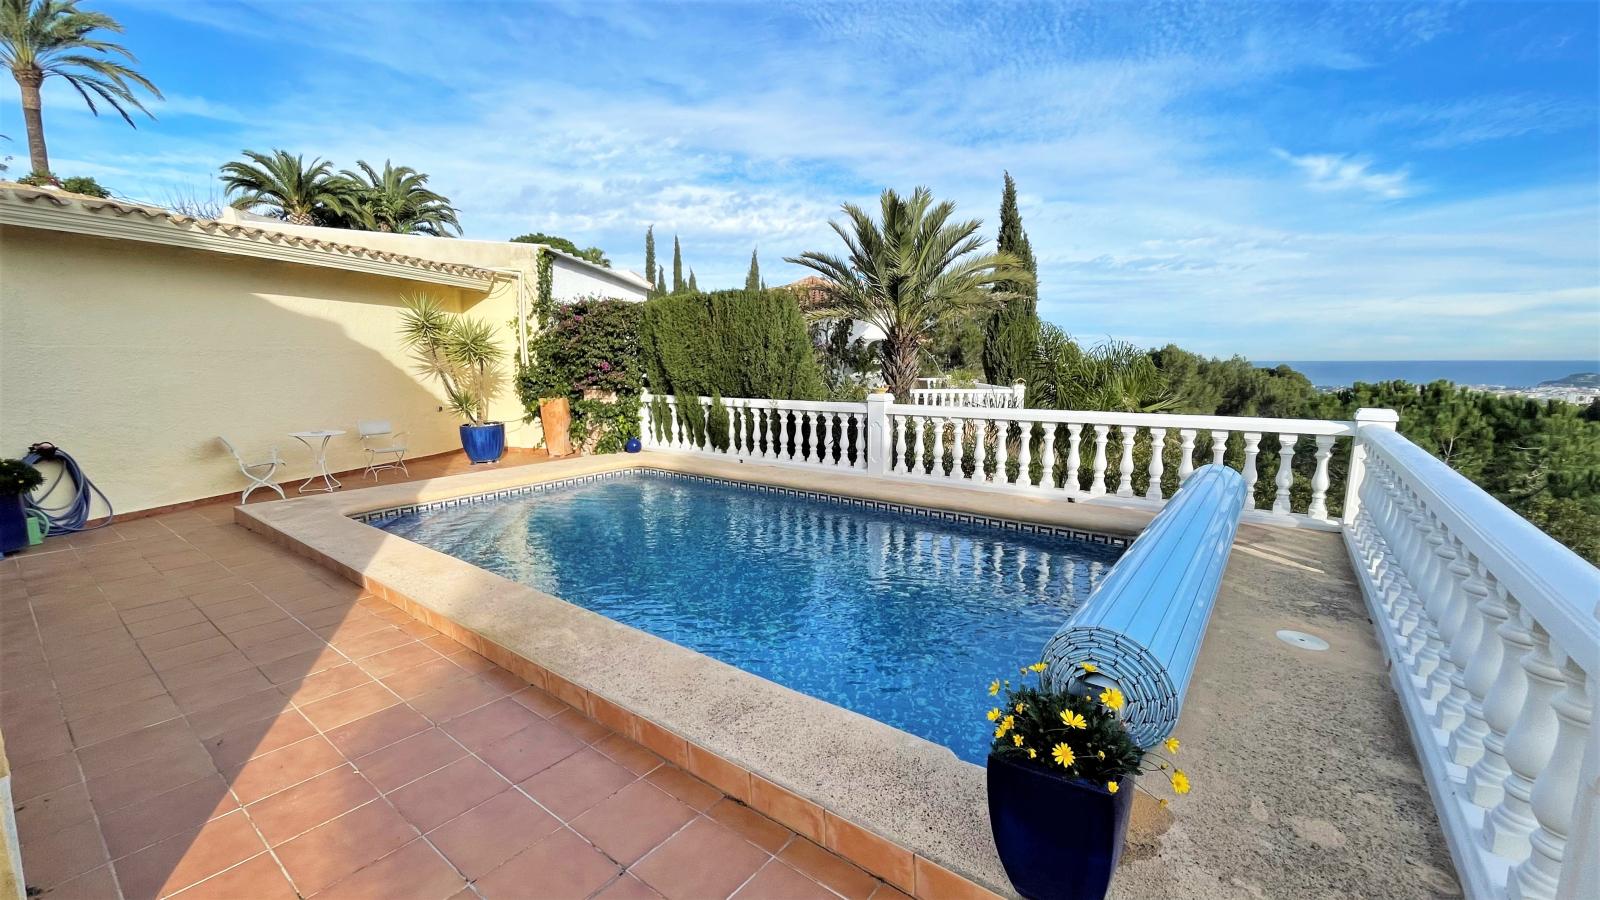 Wunderschöne Villa mit Meerblick in bevorzugter Lage, mit Fußbodenheizung, Pool, Carport, Wintergarten und vieles mehr!